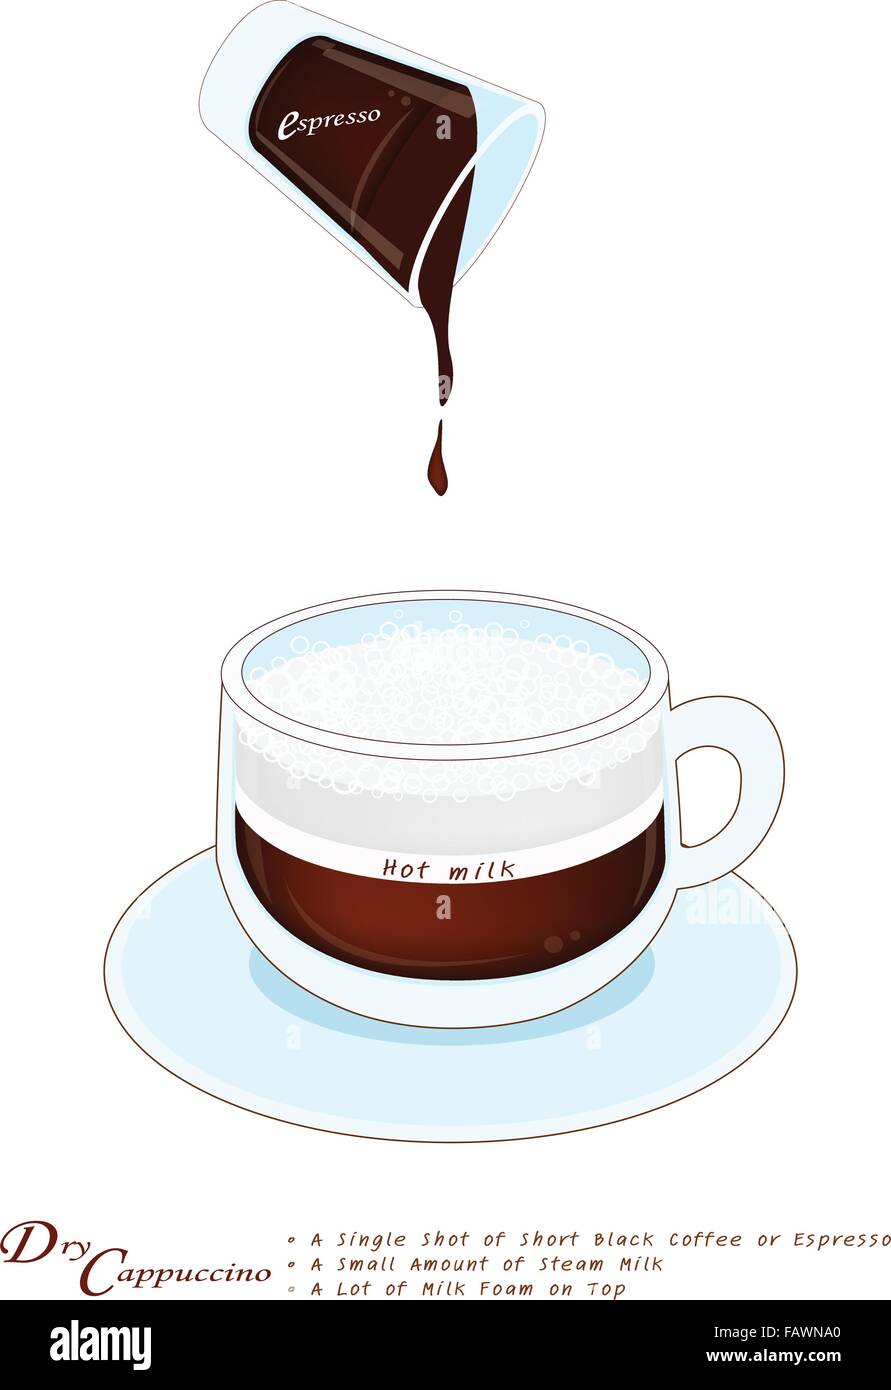 Eine Tasse trockenen Cappuccino Kaffee isoliert auf einem weißen Hintergrund, trockenen Cappuccino ist ein Schuss Espresso Kaffee mit dicken geschäumten Mil Stock Vektor